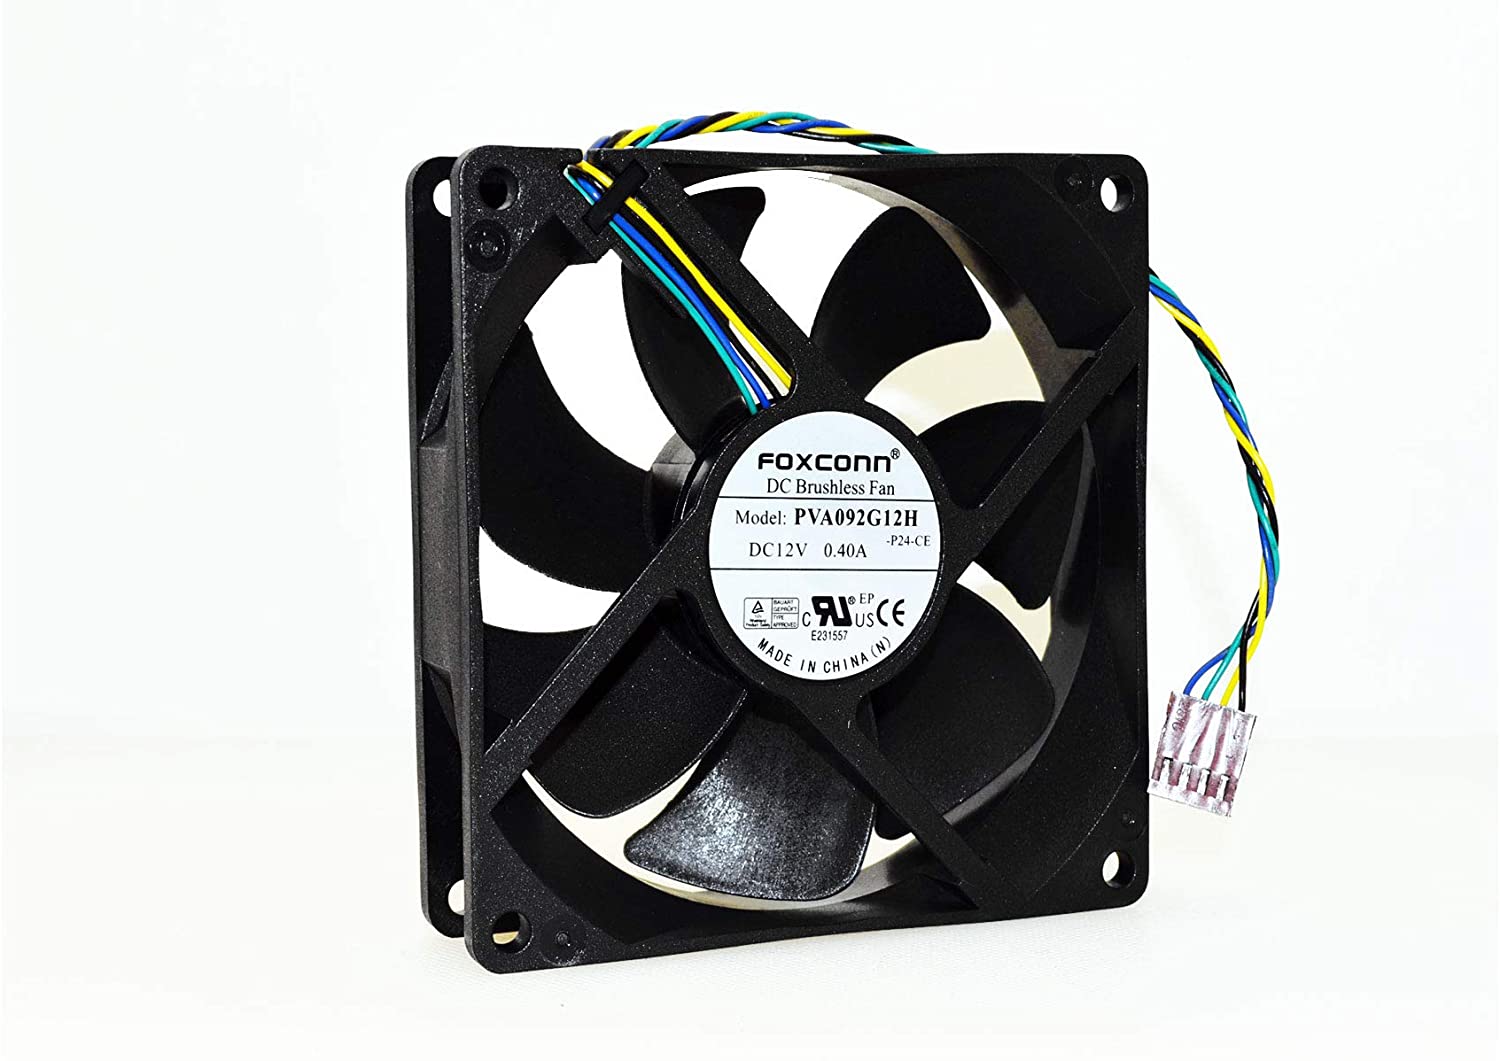 Foxconn pva092g12h 92x92x25mm 92mm Fan Cooling Fan HP P/N 580230-001 for Compaq 8000 CMT Elite PC